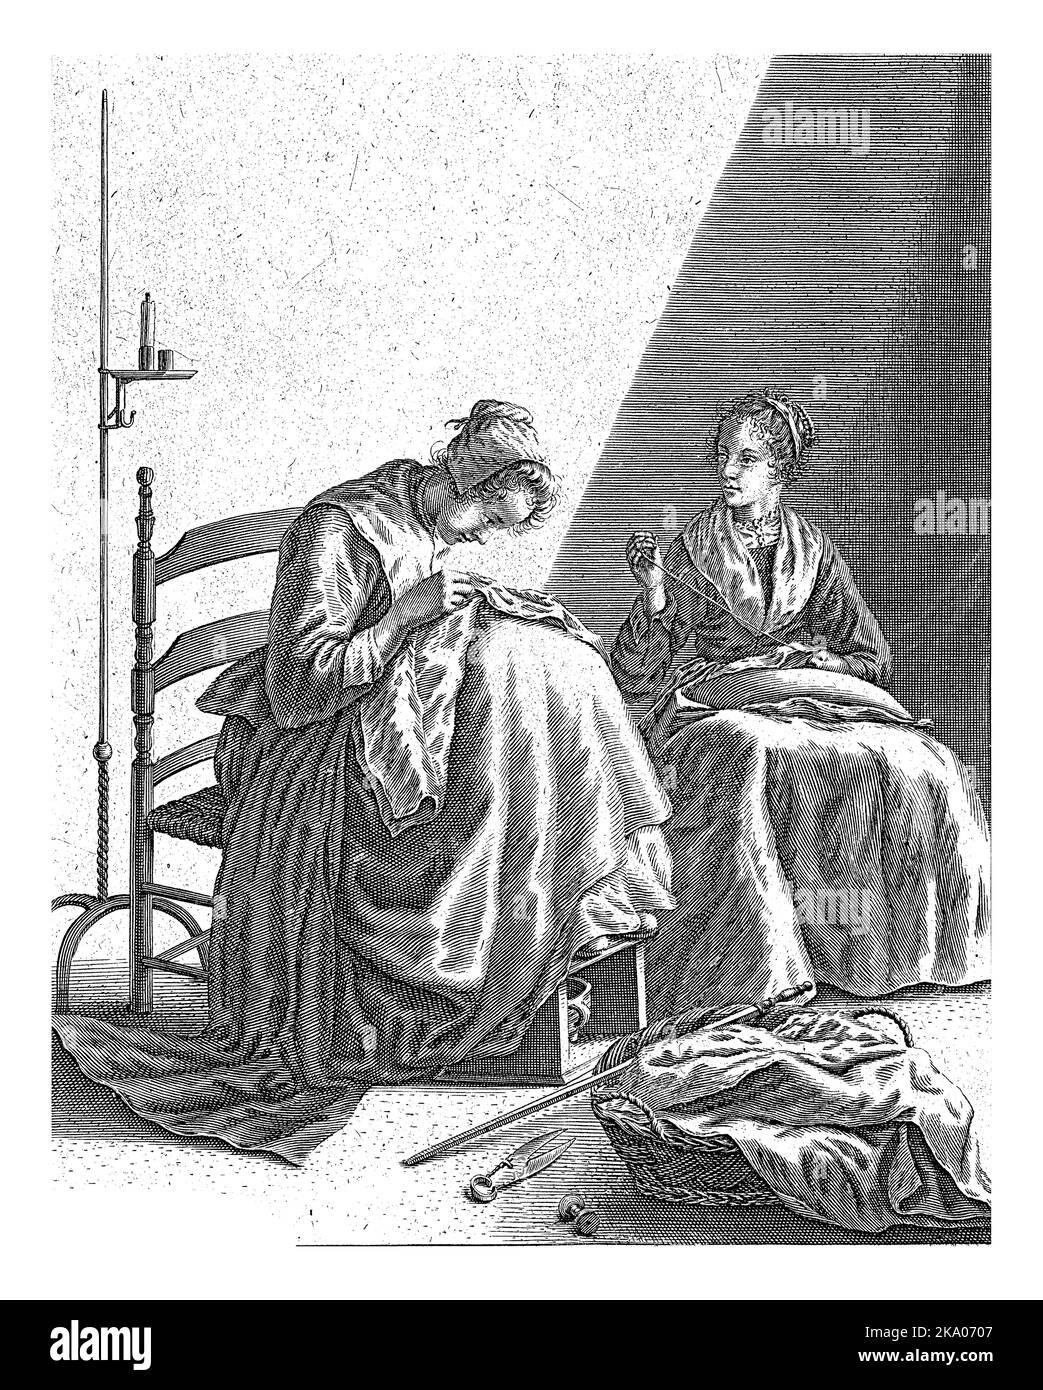 Zwei Frauen führen Umbauarbeiten in einem Raum durch. Auf dem Boden ein Korb, ein Messstab, eine Schere und eine Spule. Ein großer Kerzenständer auf der linken Seite. Stockfoto